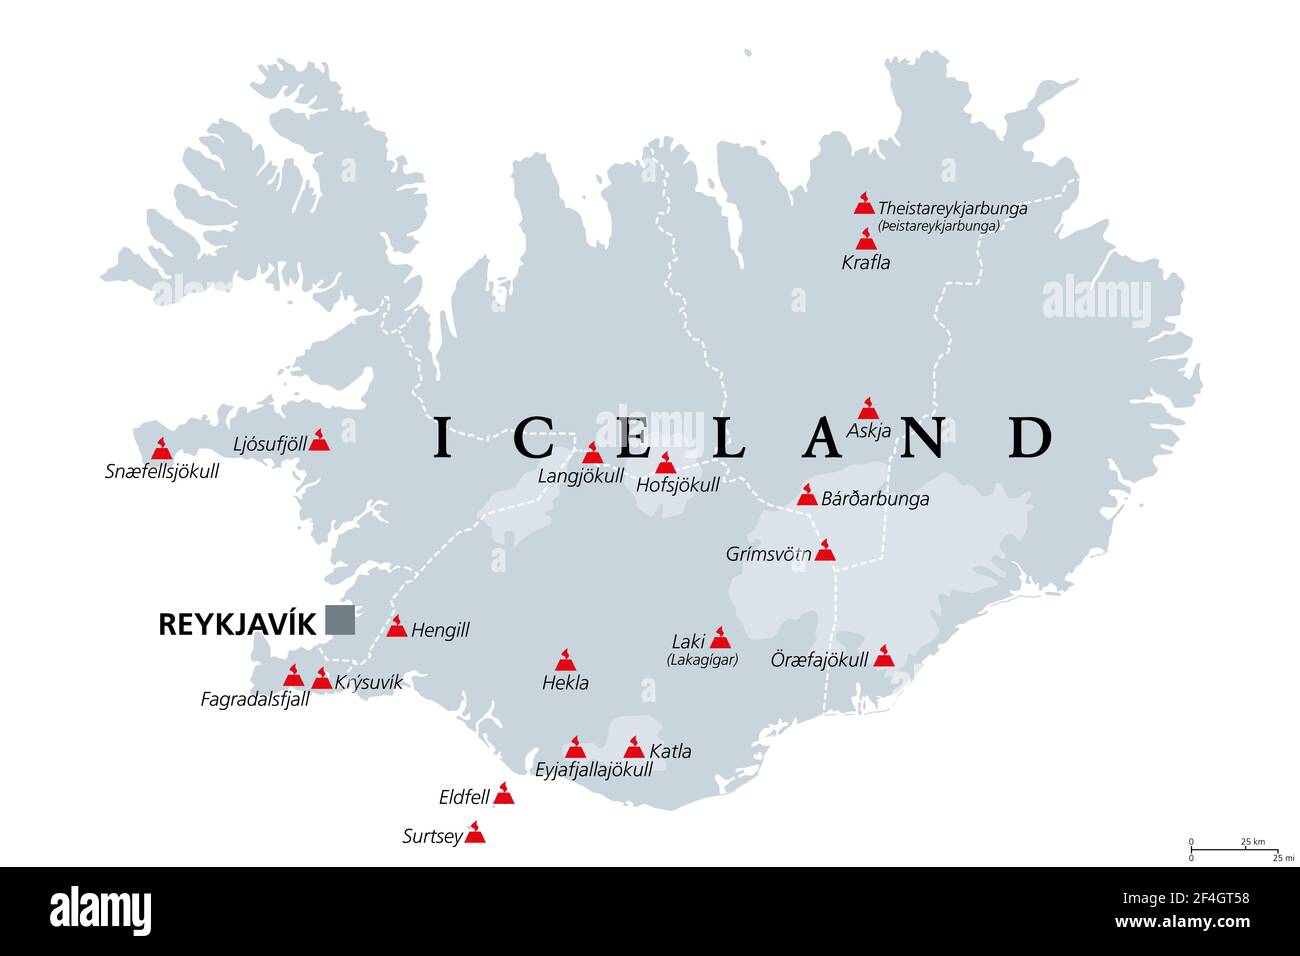 Vulcani dell'Islanda che sono scoppiati dopo l'insediamento umano, mappa politica. Diciotto vulcani mostrati sulla mappa grigia dell'Islanda, con ghiacciai e regioni. Foto Stock